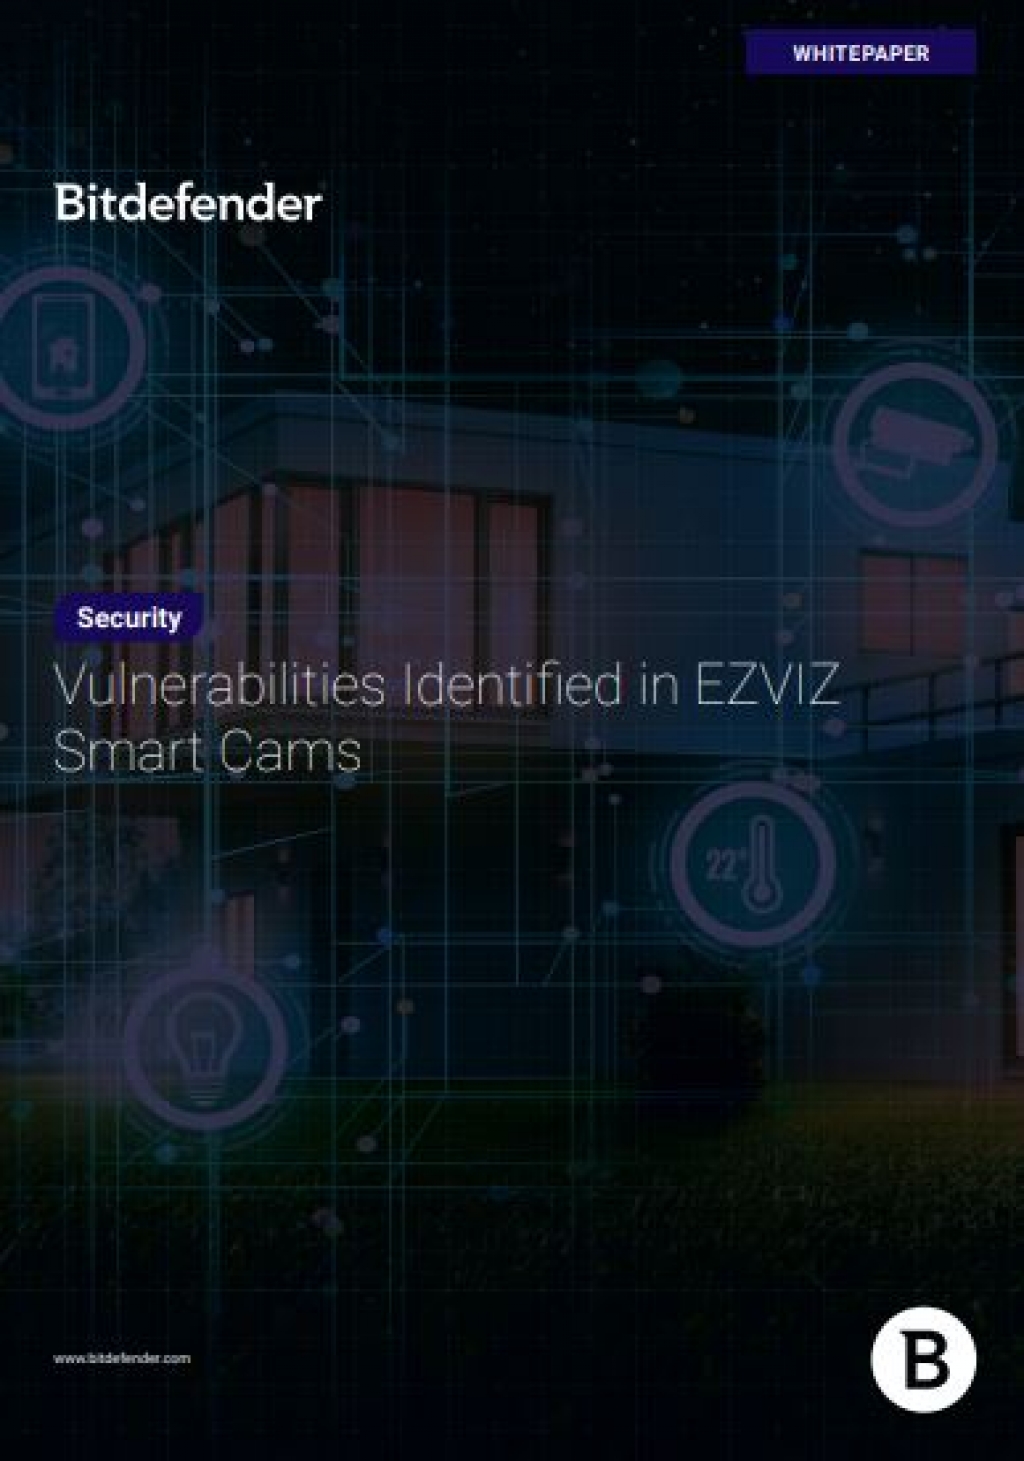 EZVIZ smart home cameras' security risks revealed - Cyber Daily